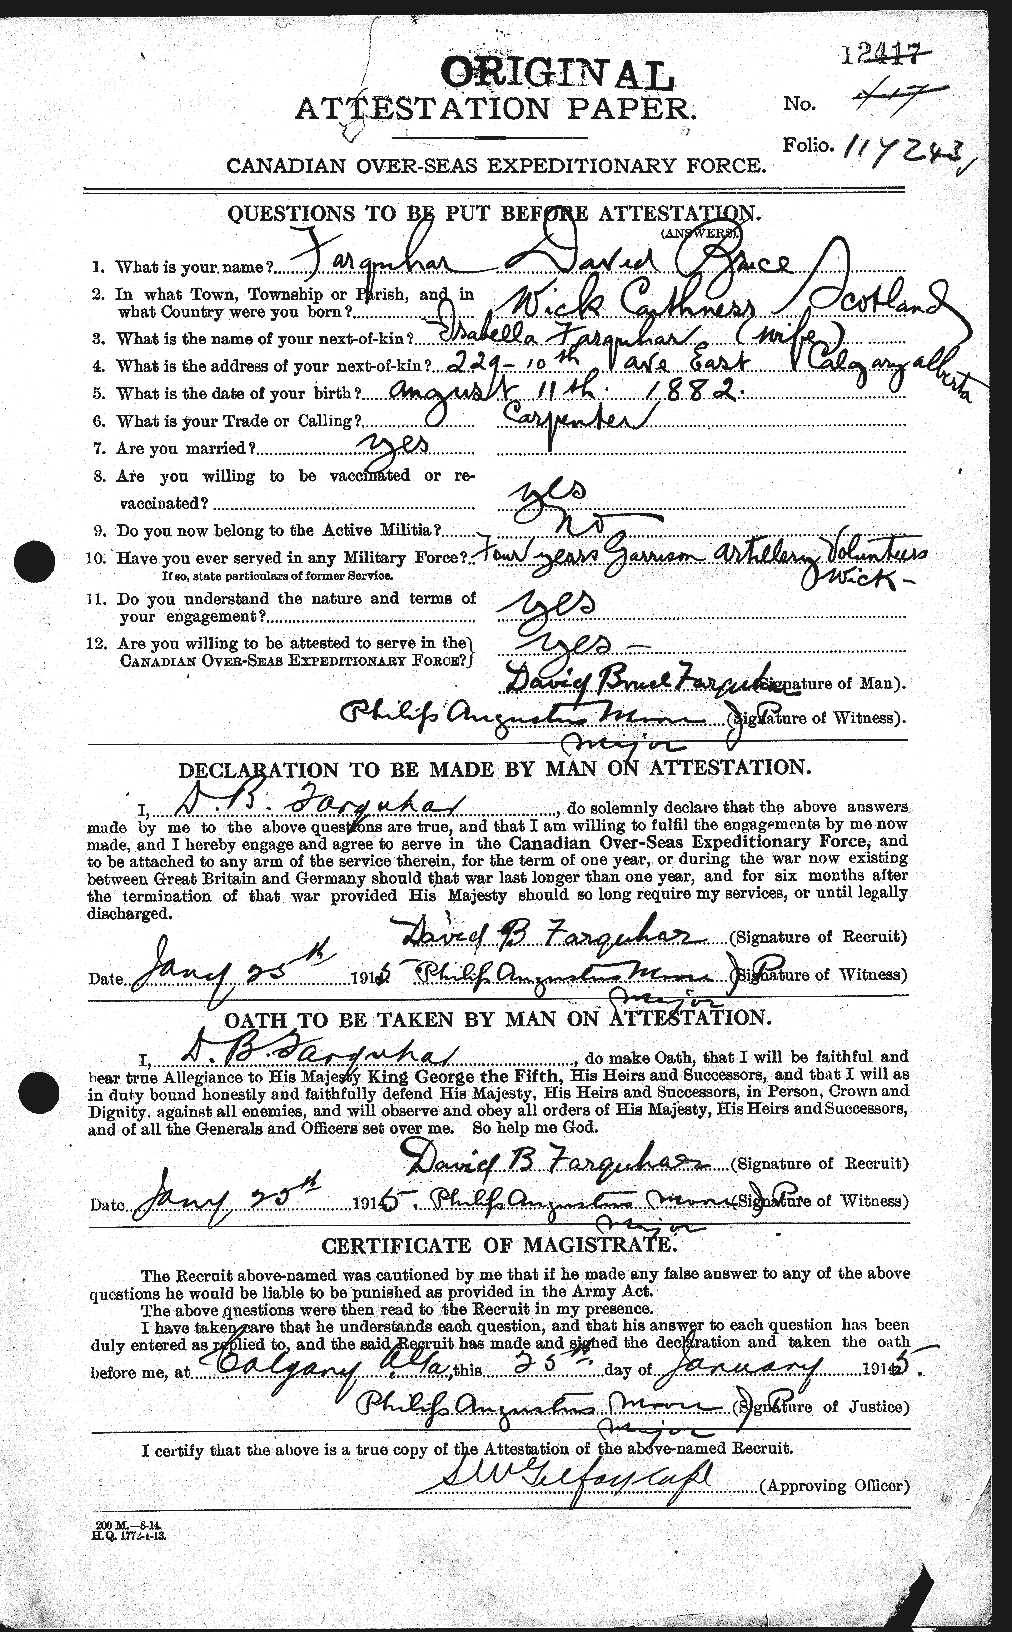 Dossiers du Personnel de la Première Guerre mondiale - CEC 318767a